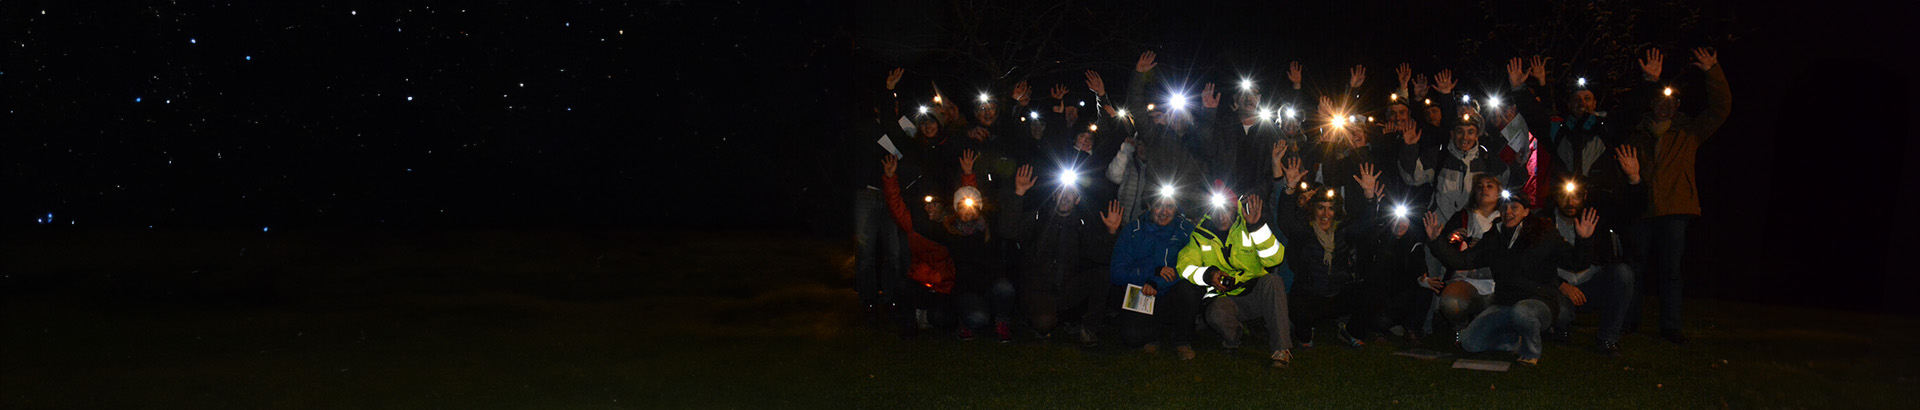 Activité de team building Rallye nocturne et orientation dans la nuit en équipe